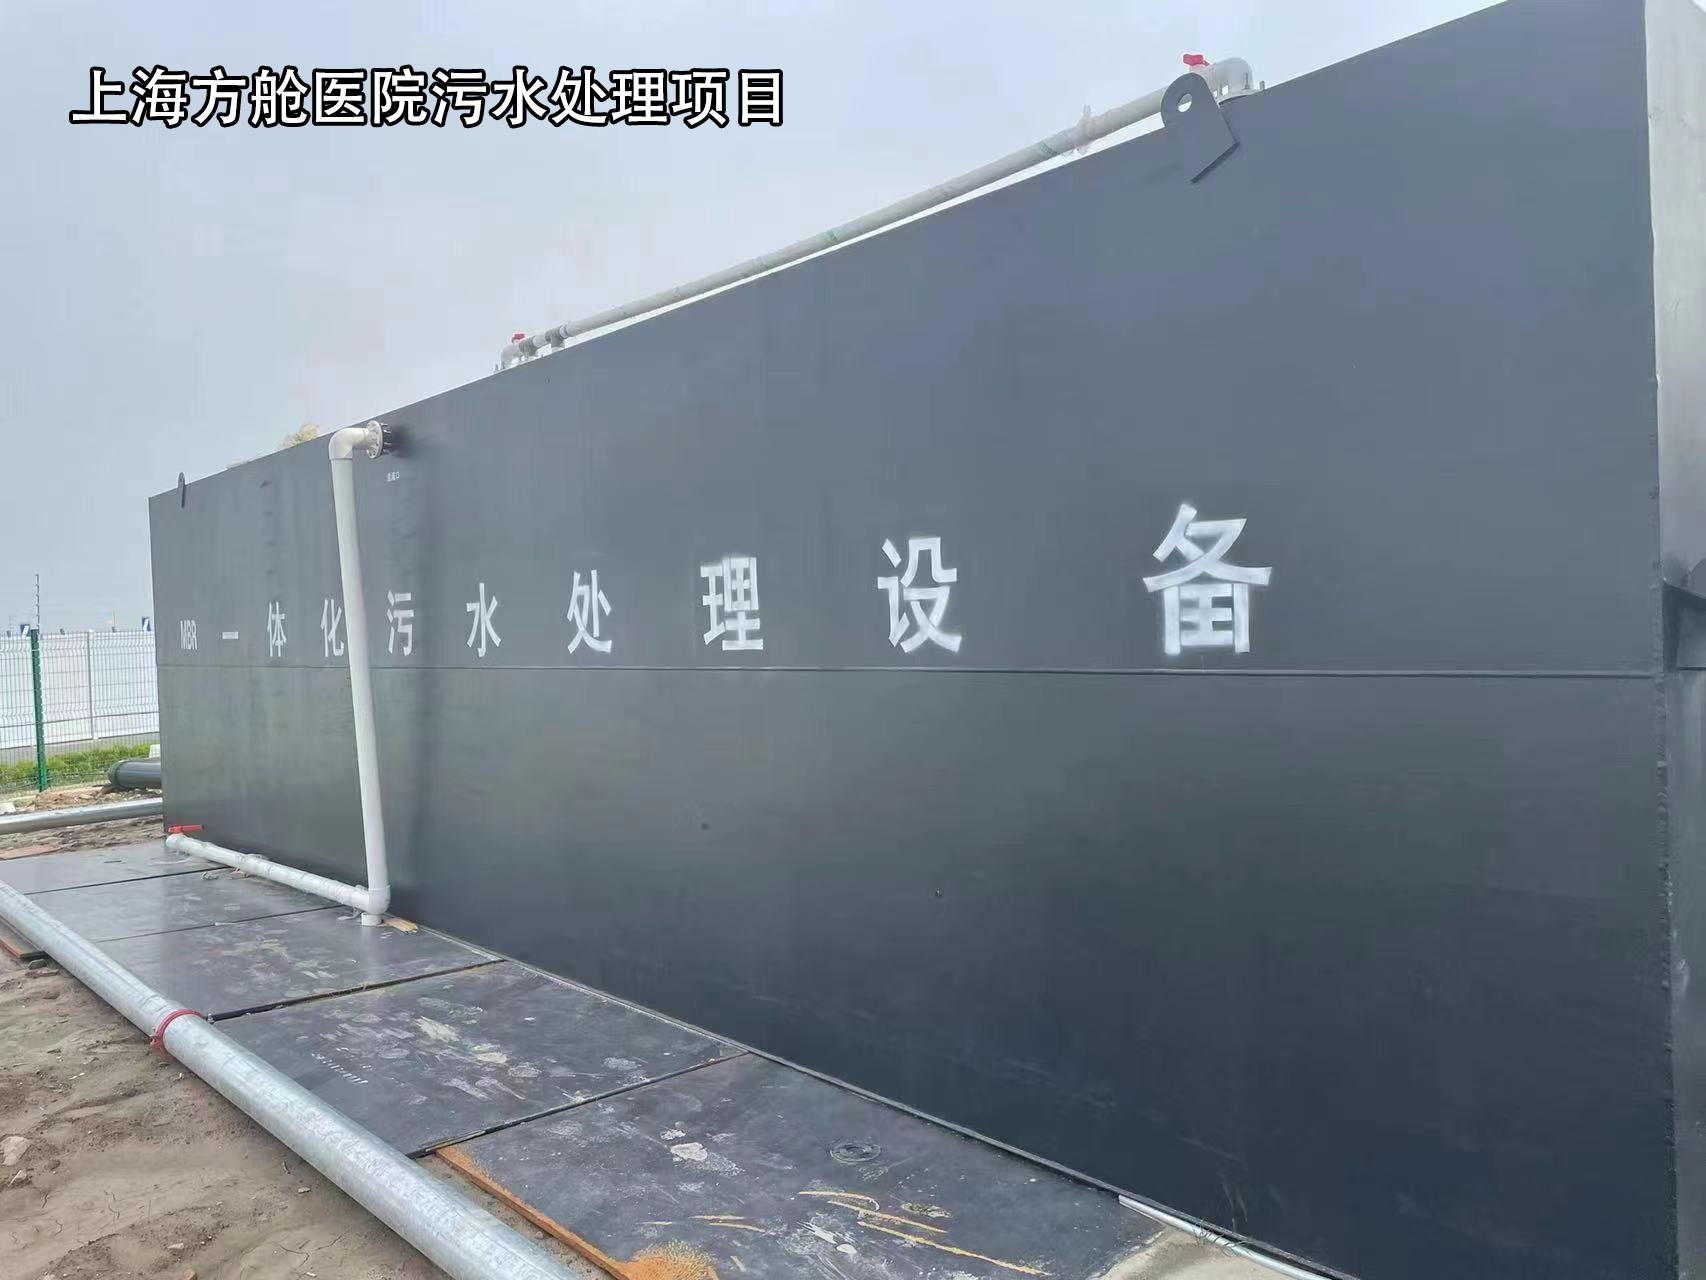 上海方艙醫院污水處理項目